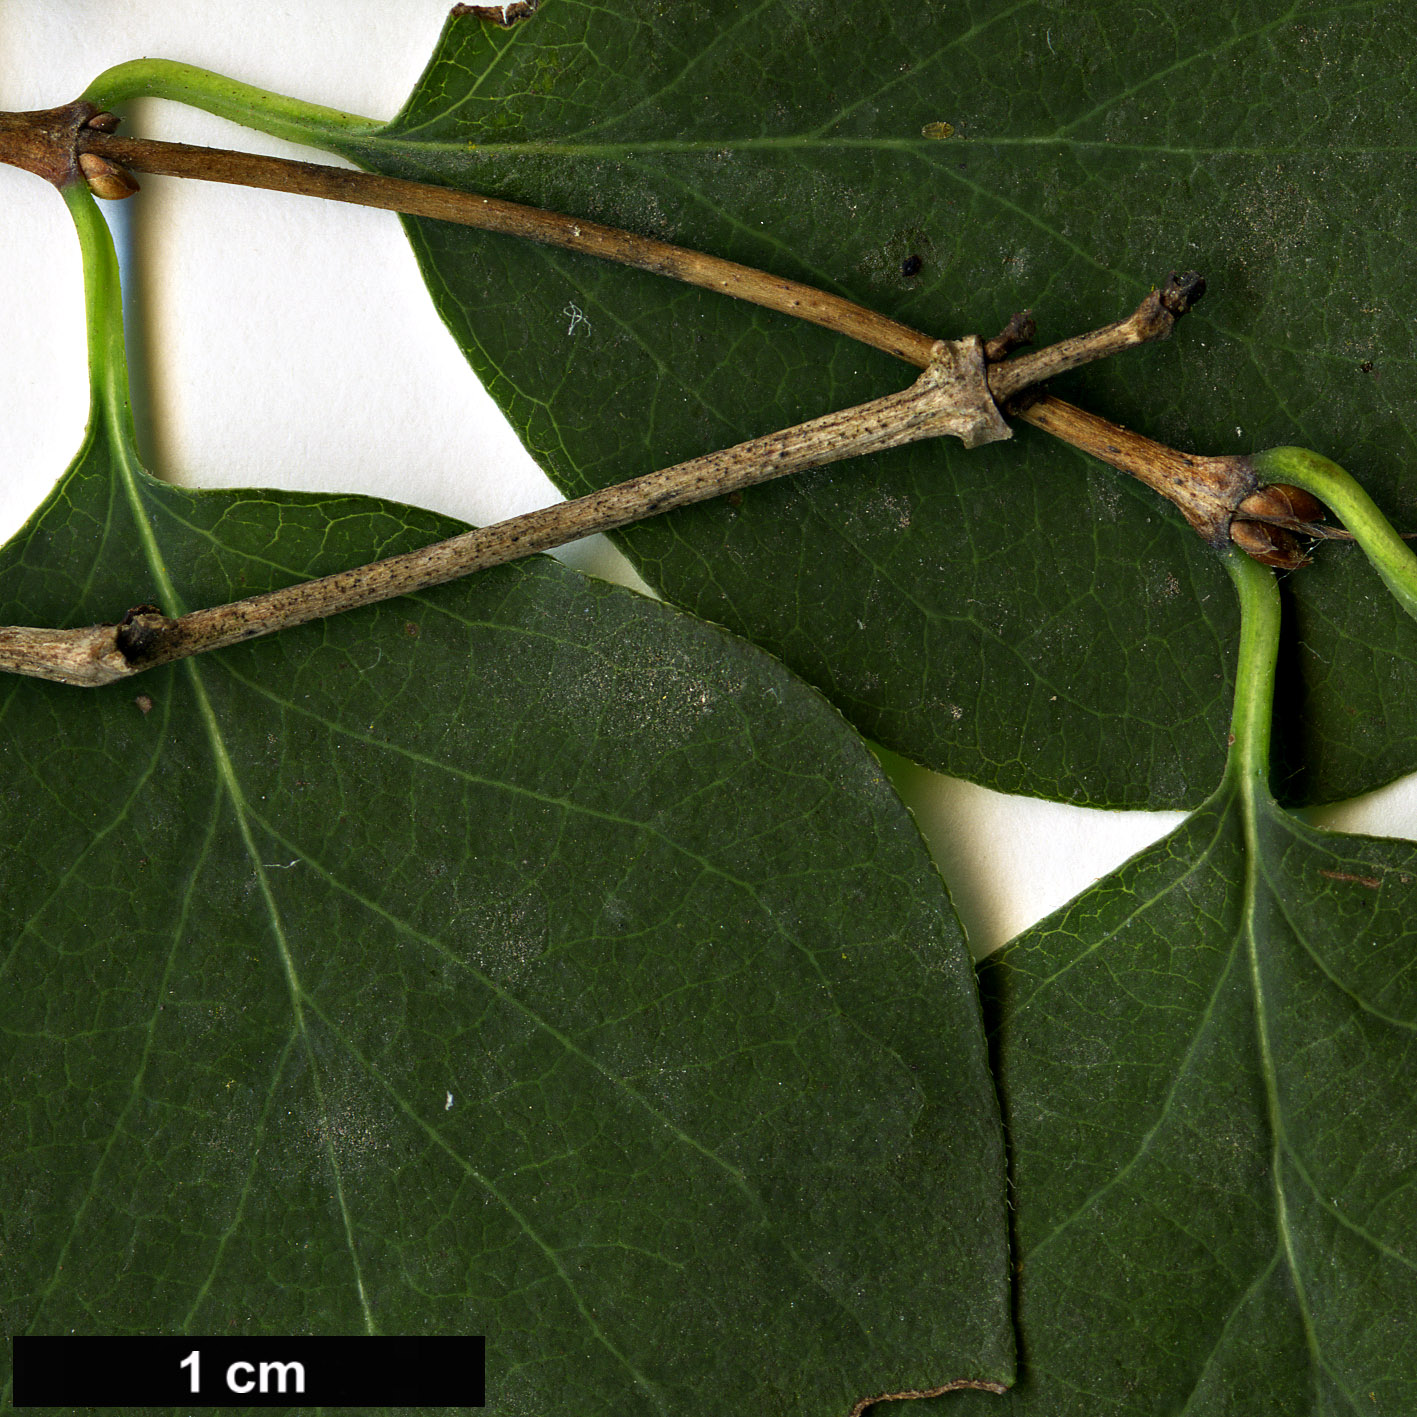 High resolution image: Family: Caprifoliaceae - Genus: Symphoricarpos - Taxon: albus - SpeciesSub: var. laevigatus